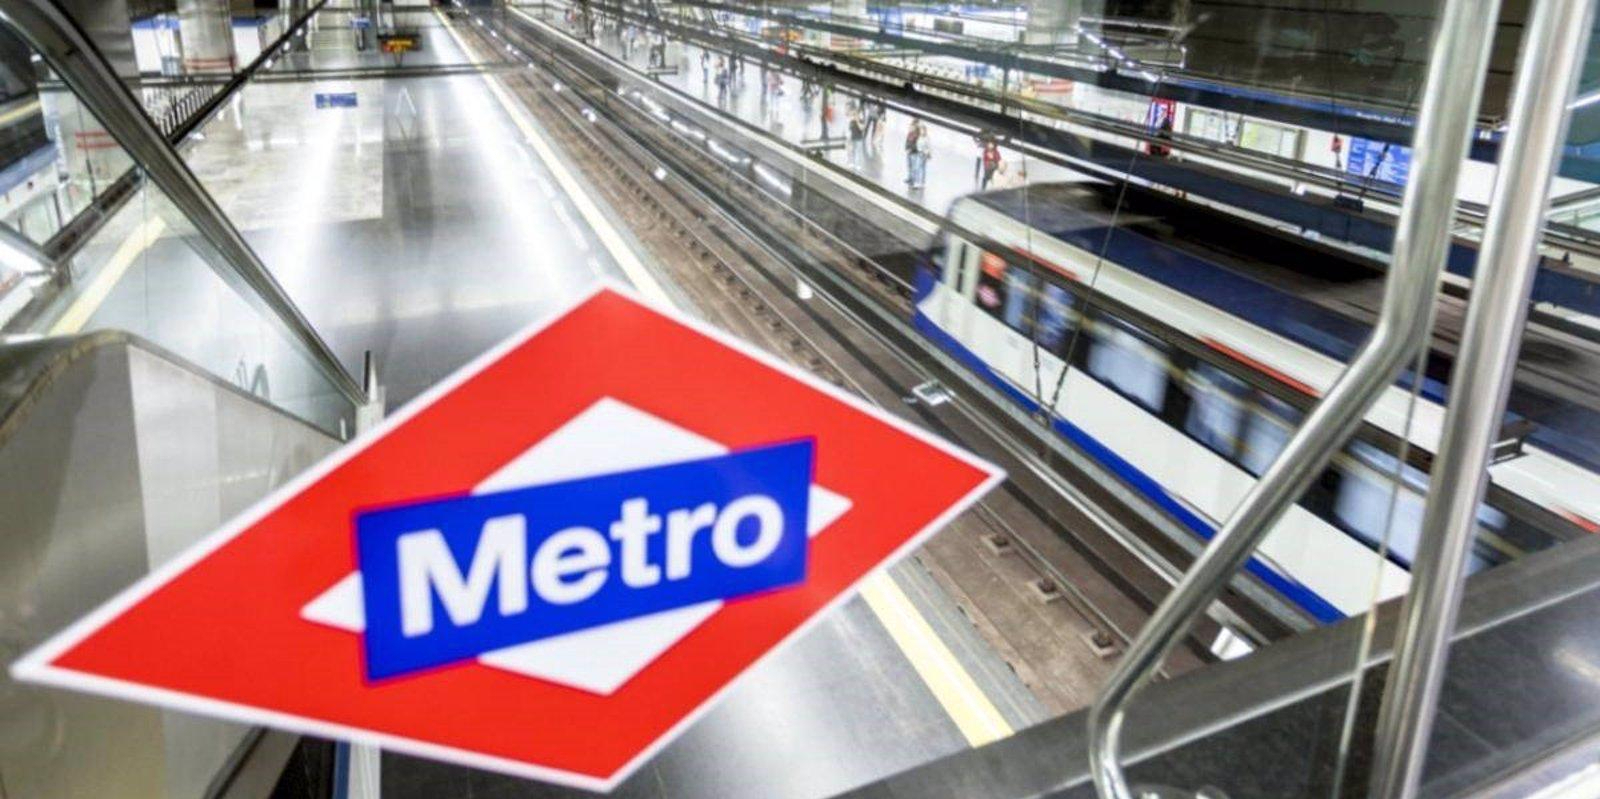 Circulación lenta en la Línea 10 de Metro entre Tres Olivos y Nuevos Ministerios por una incidencia